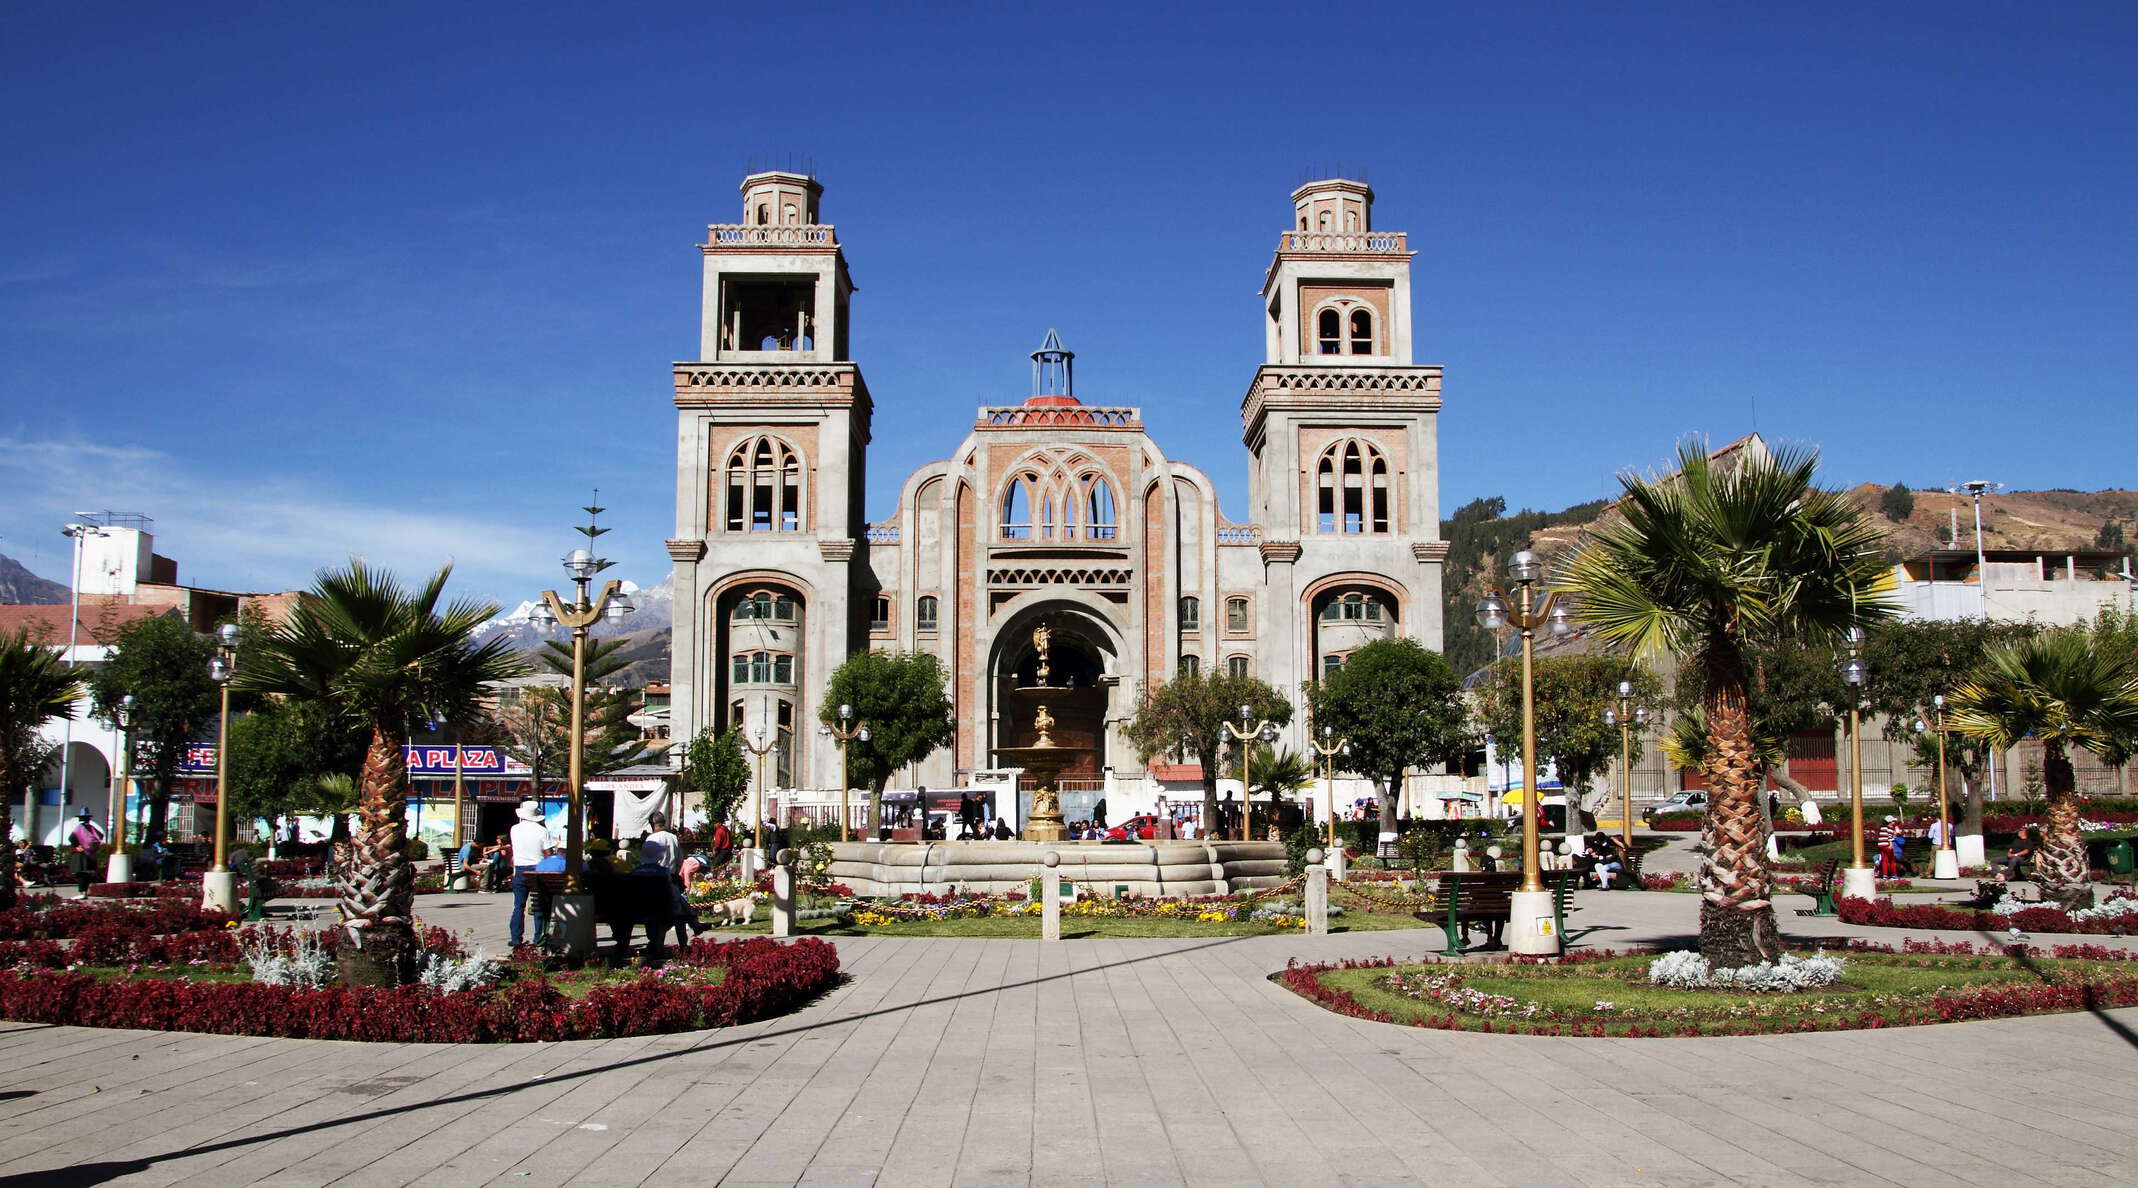 Huaraz | Plaza de Armas with Catedral de Huaraz